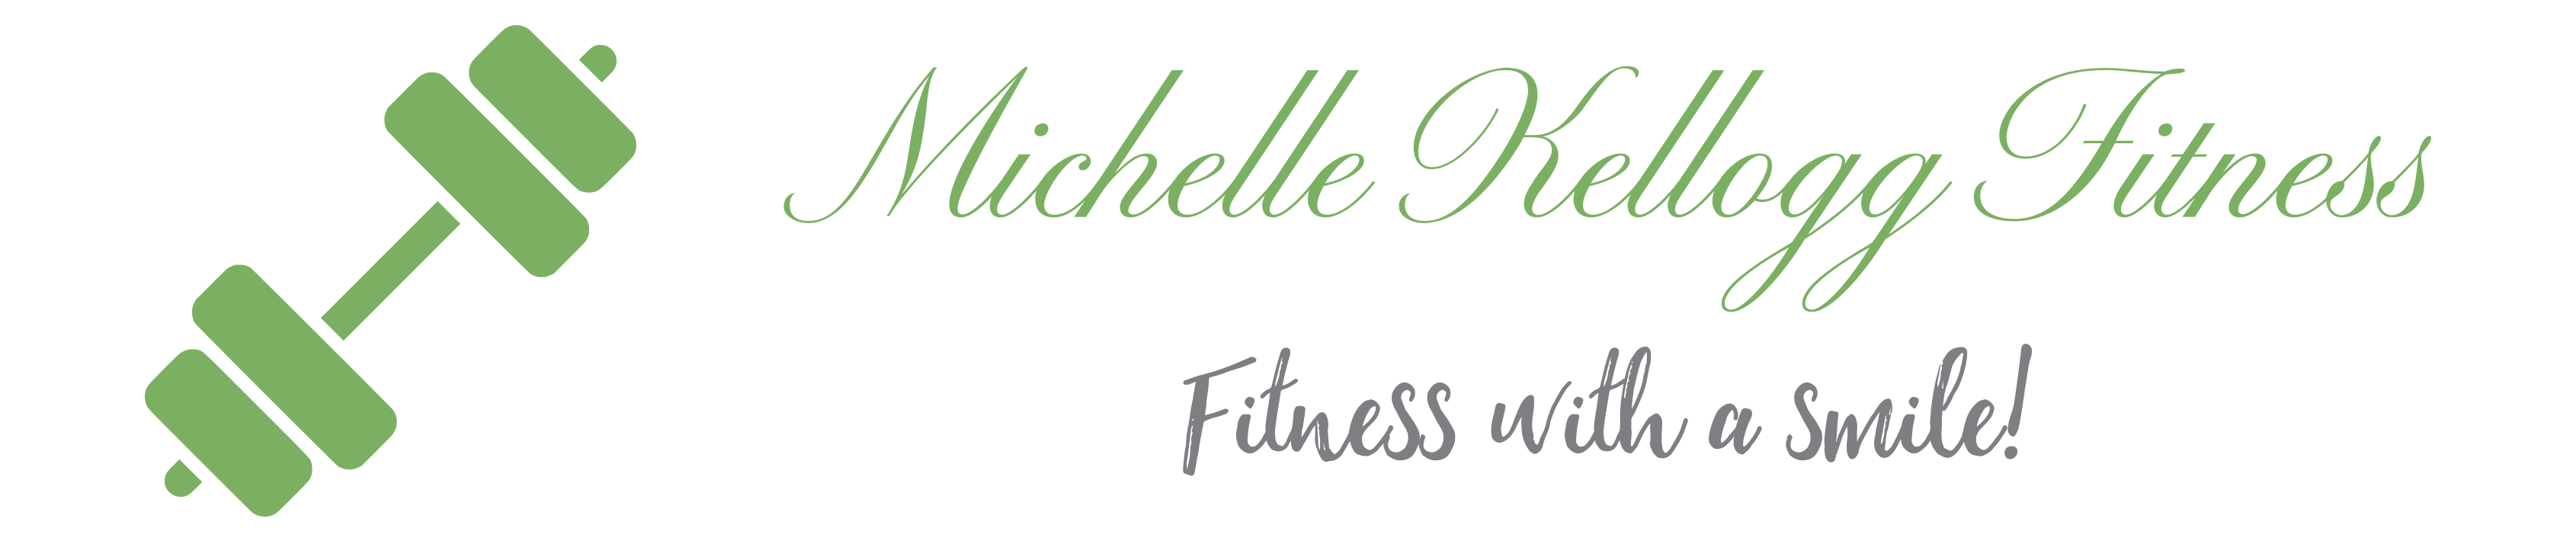 Michelle Kellogg Fitness